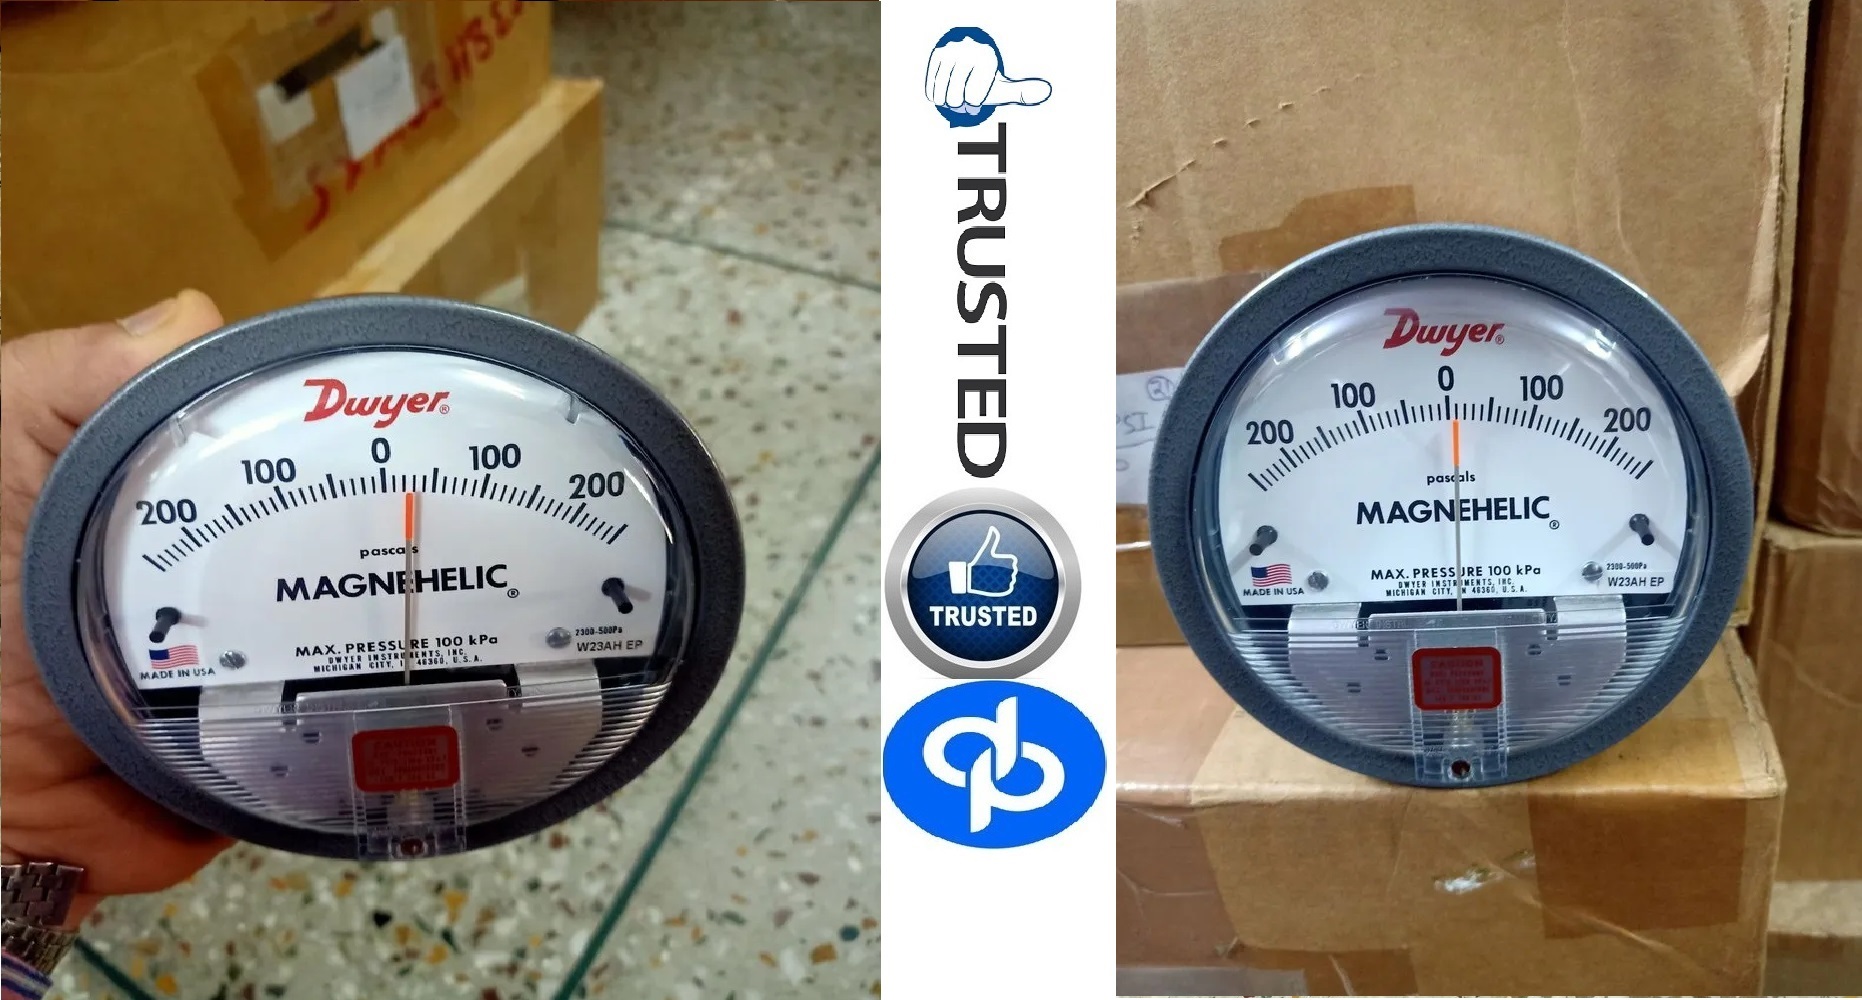 Dwyer Maghnehic gauges by Hasanpur Uttar Pradesh